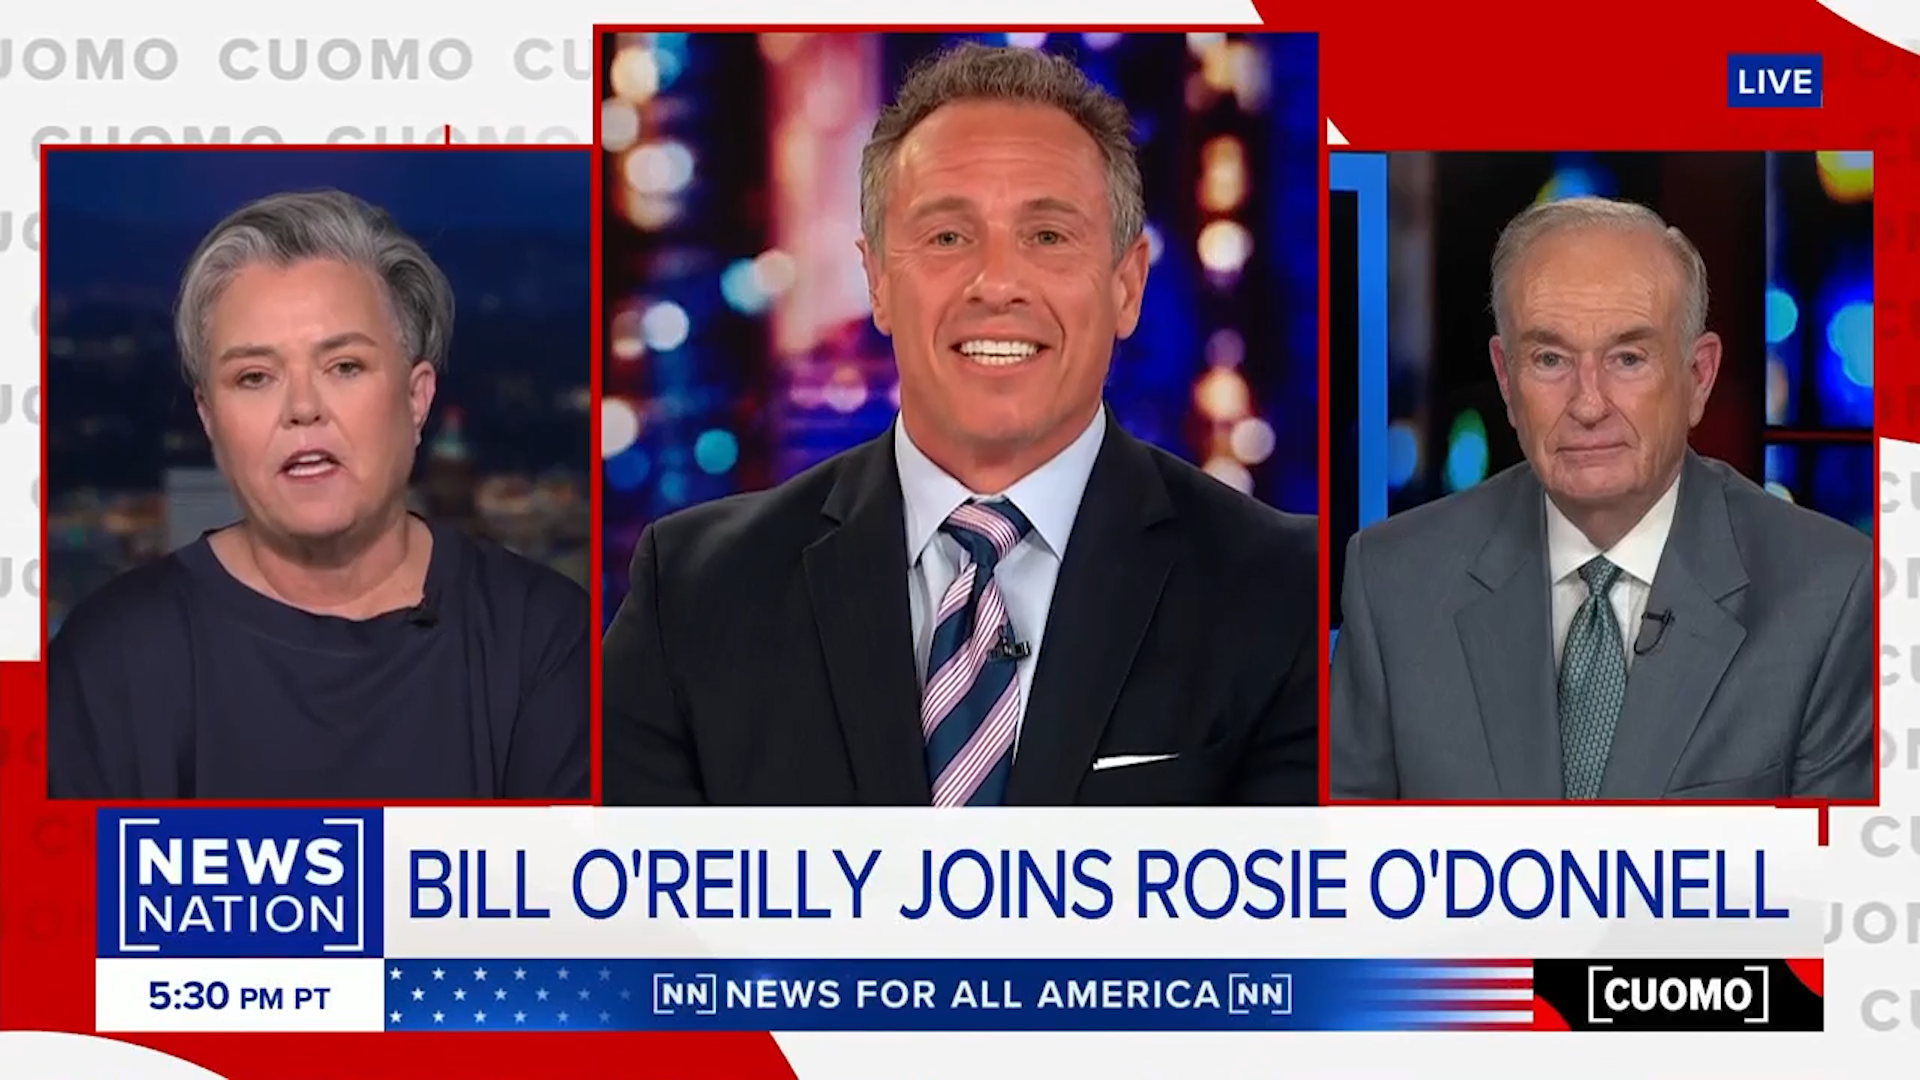 Bill O'Reilly Debates Rosie O'Donnell on CUOMO